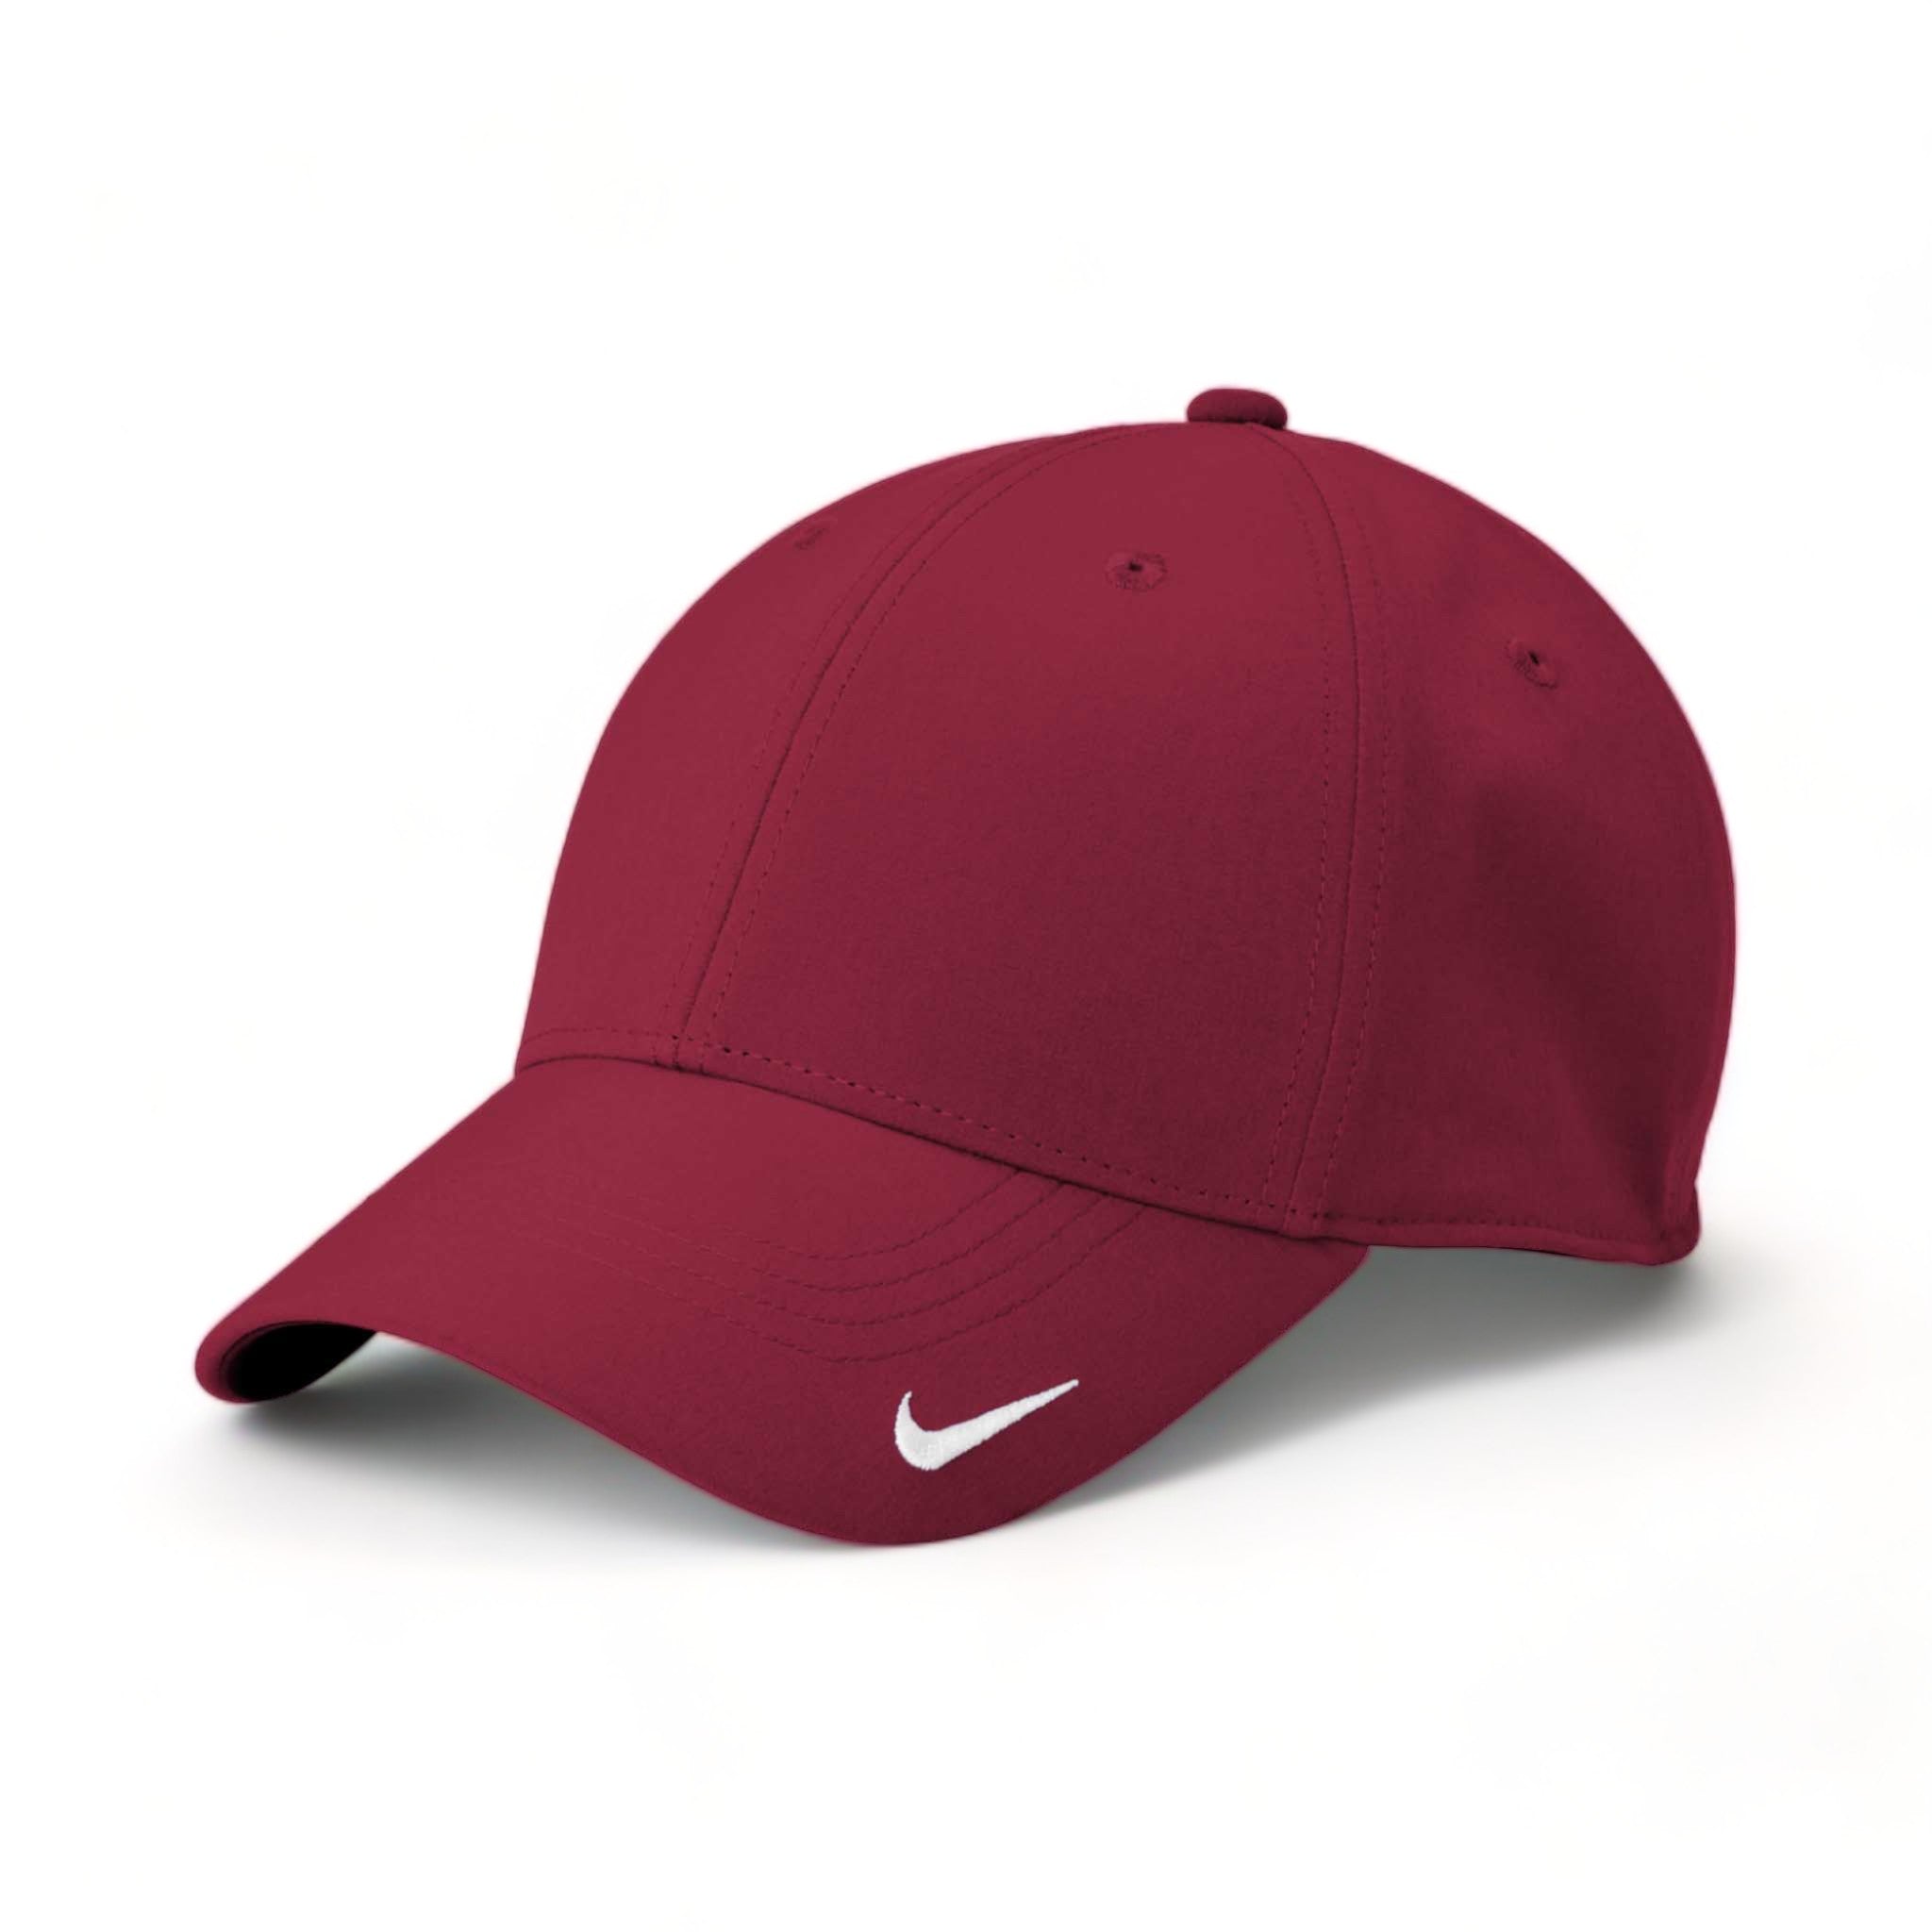 Side view of Nike NKFB6447 custom hat in team maroon